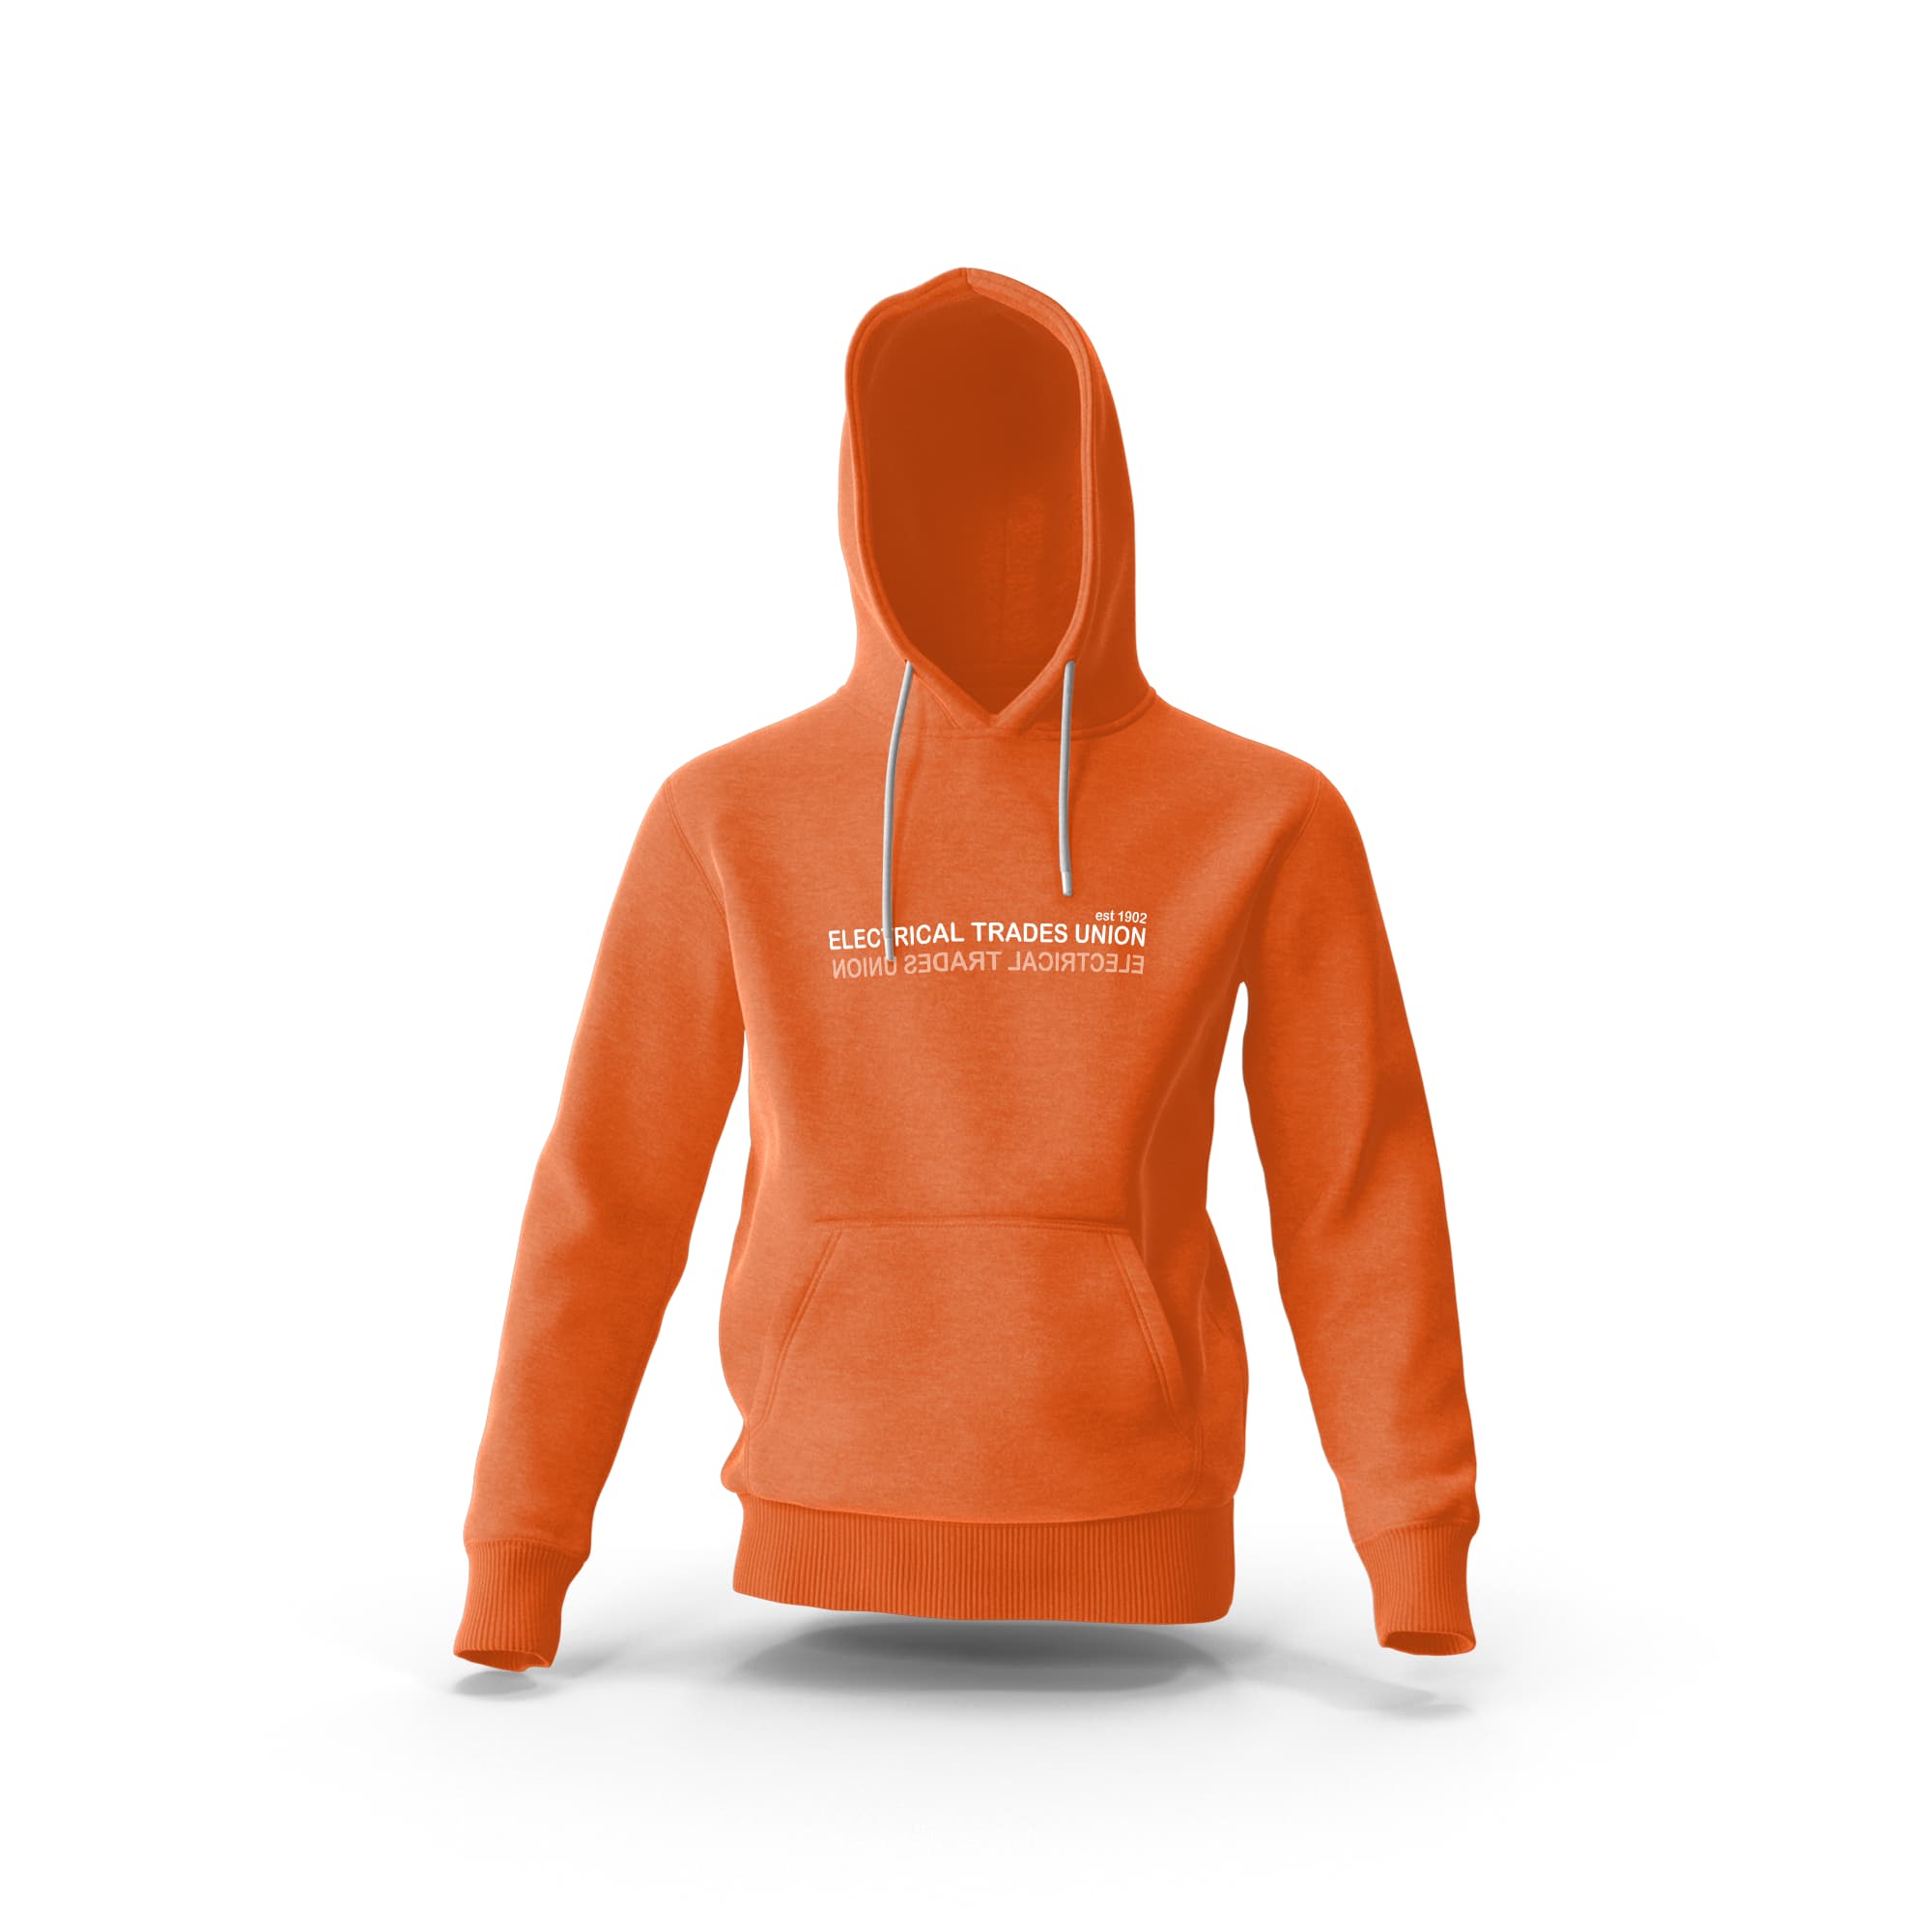 Mirror Hi Vis Orange Hooded ETU Sweatshirt